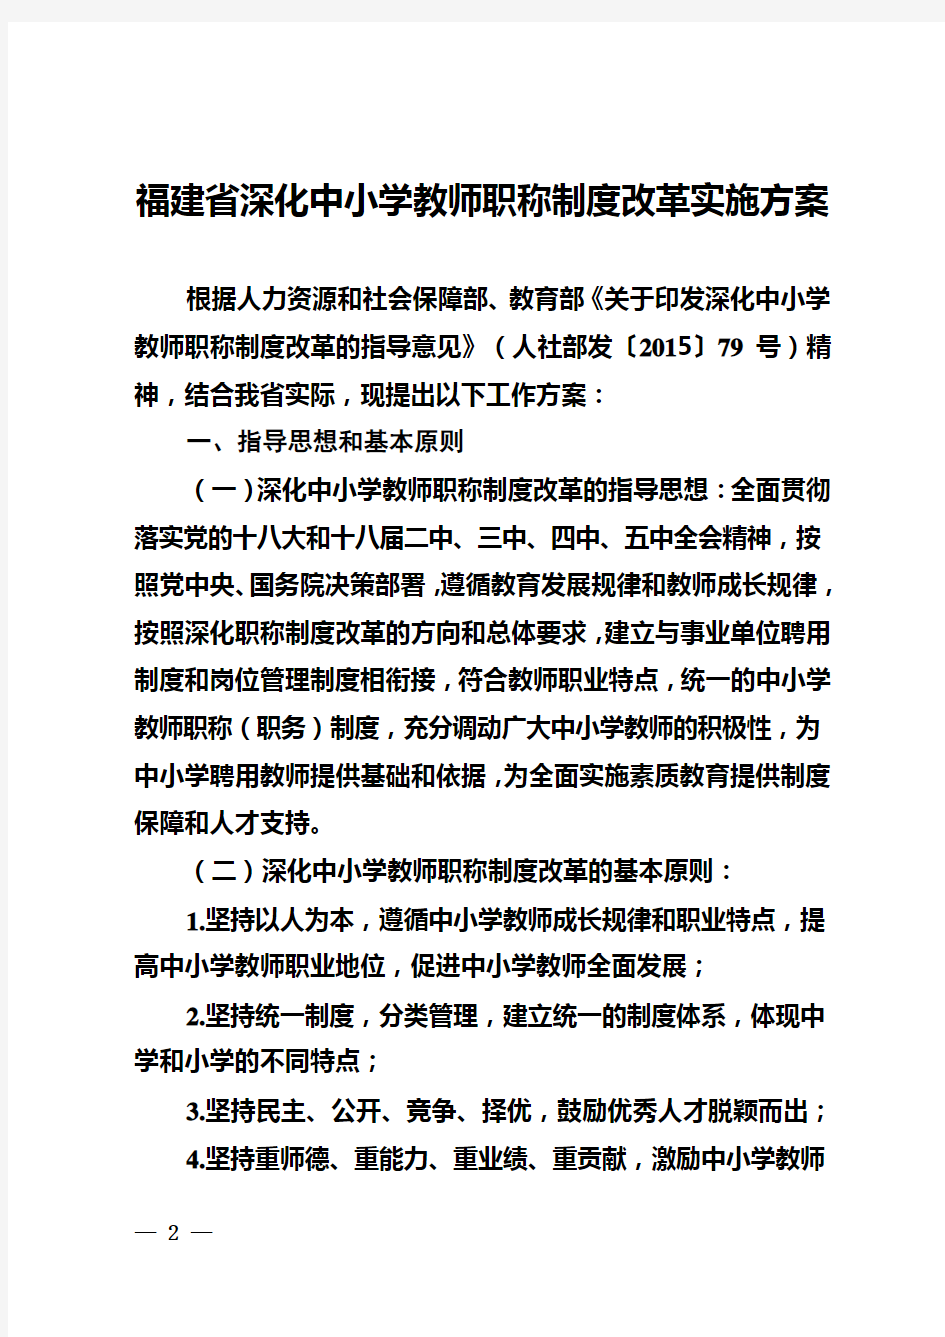 福建省深化中小学教师职称制度改革实施方案